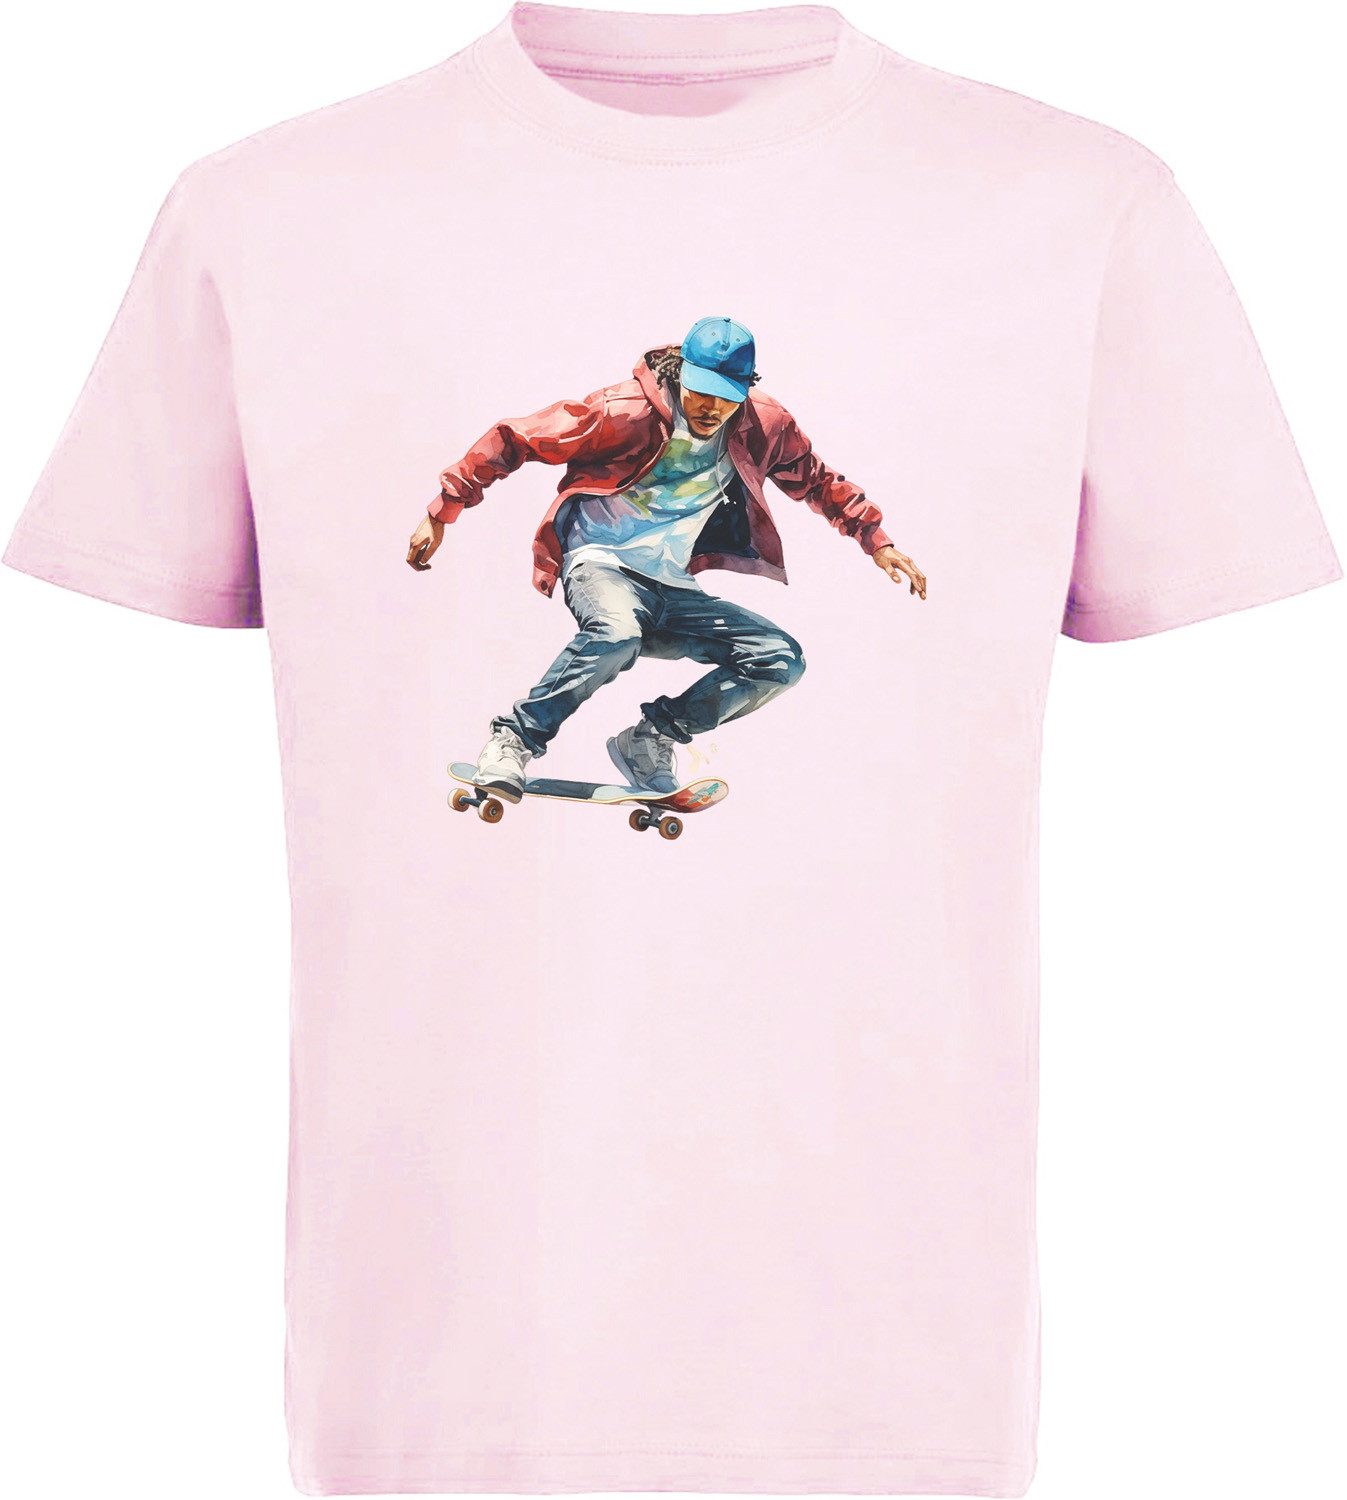 MyDesign24 T-Shirt Kinder Print Shirt Springende Skateboarder in Ölfarbenoptik Bedrucktes Jungen und Mädchen Skater T-Shirt, i554